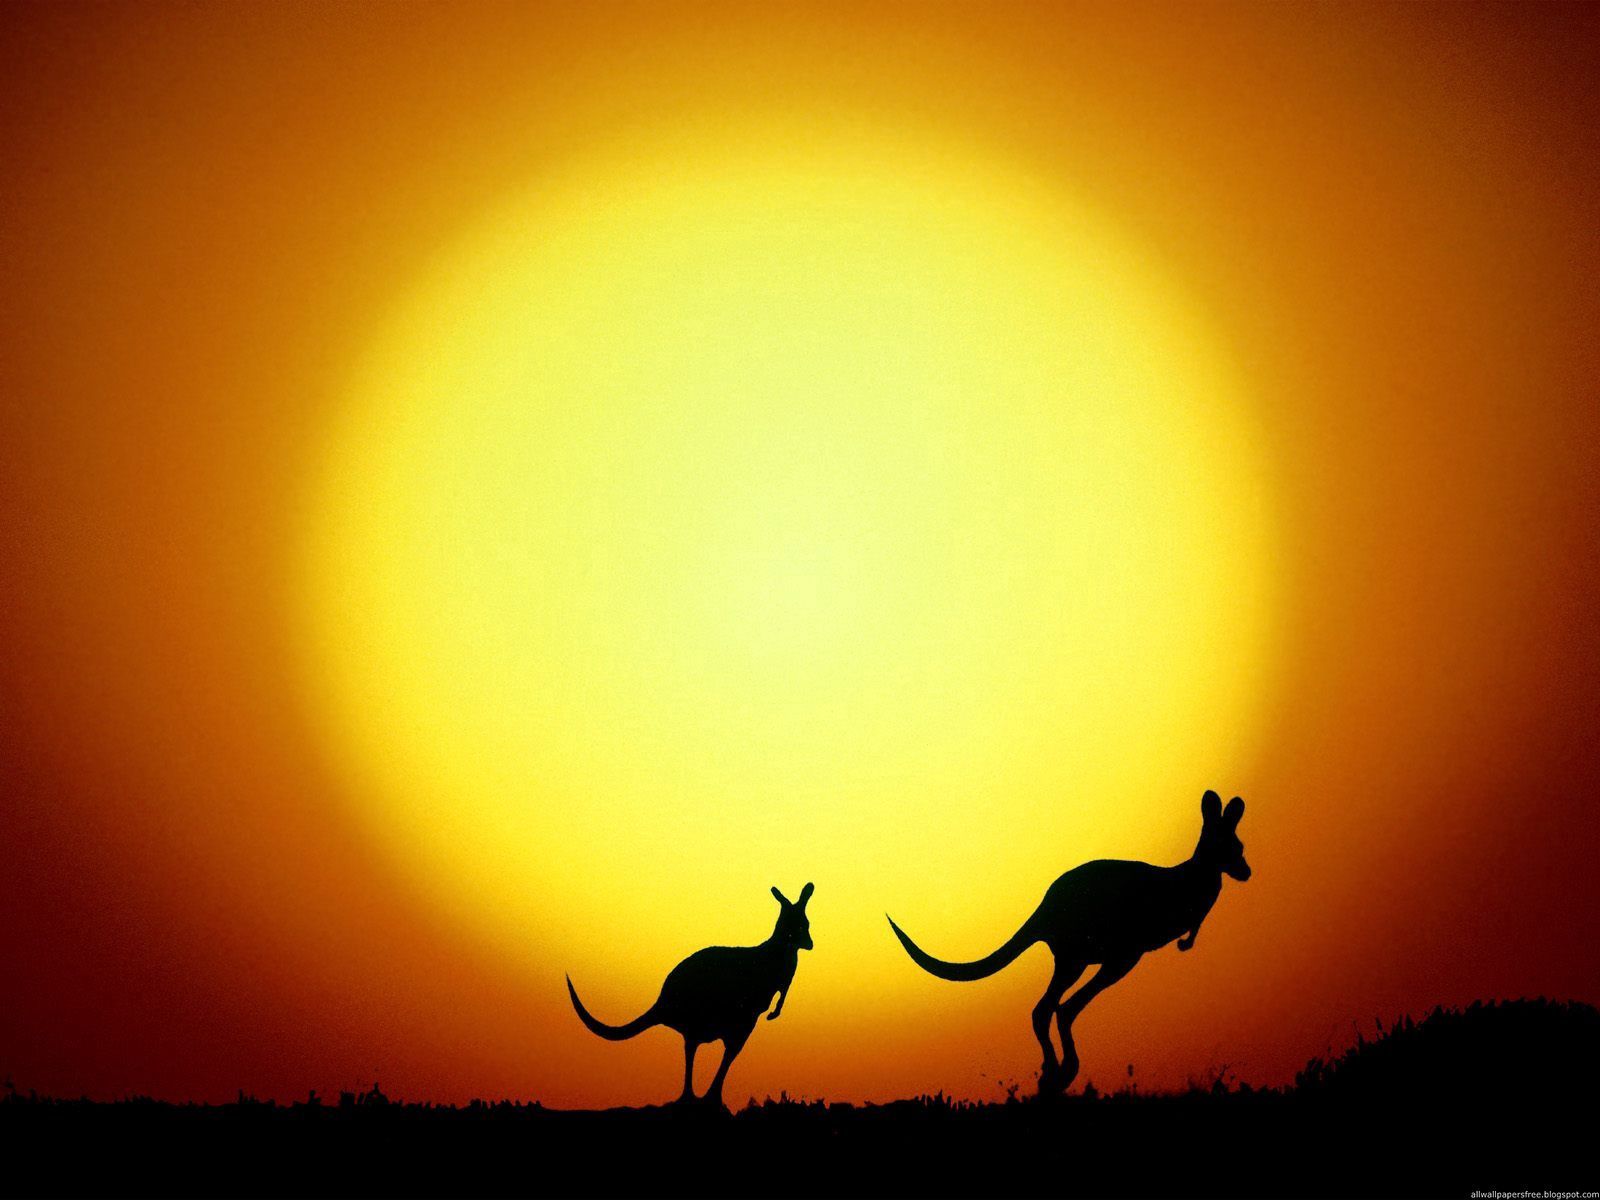 70252 fond d'écran 720x1520 sur votre téléphone gratuitement, téléchargez des images soir, coucher de soleil, kangaroo, silhouettes 720x1520 sur votre mobile